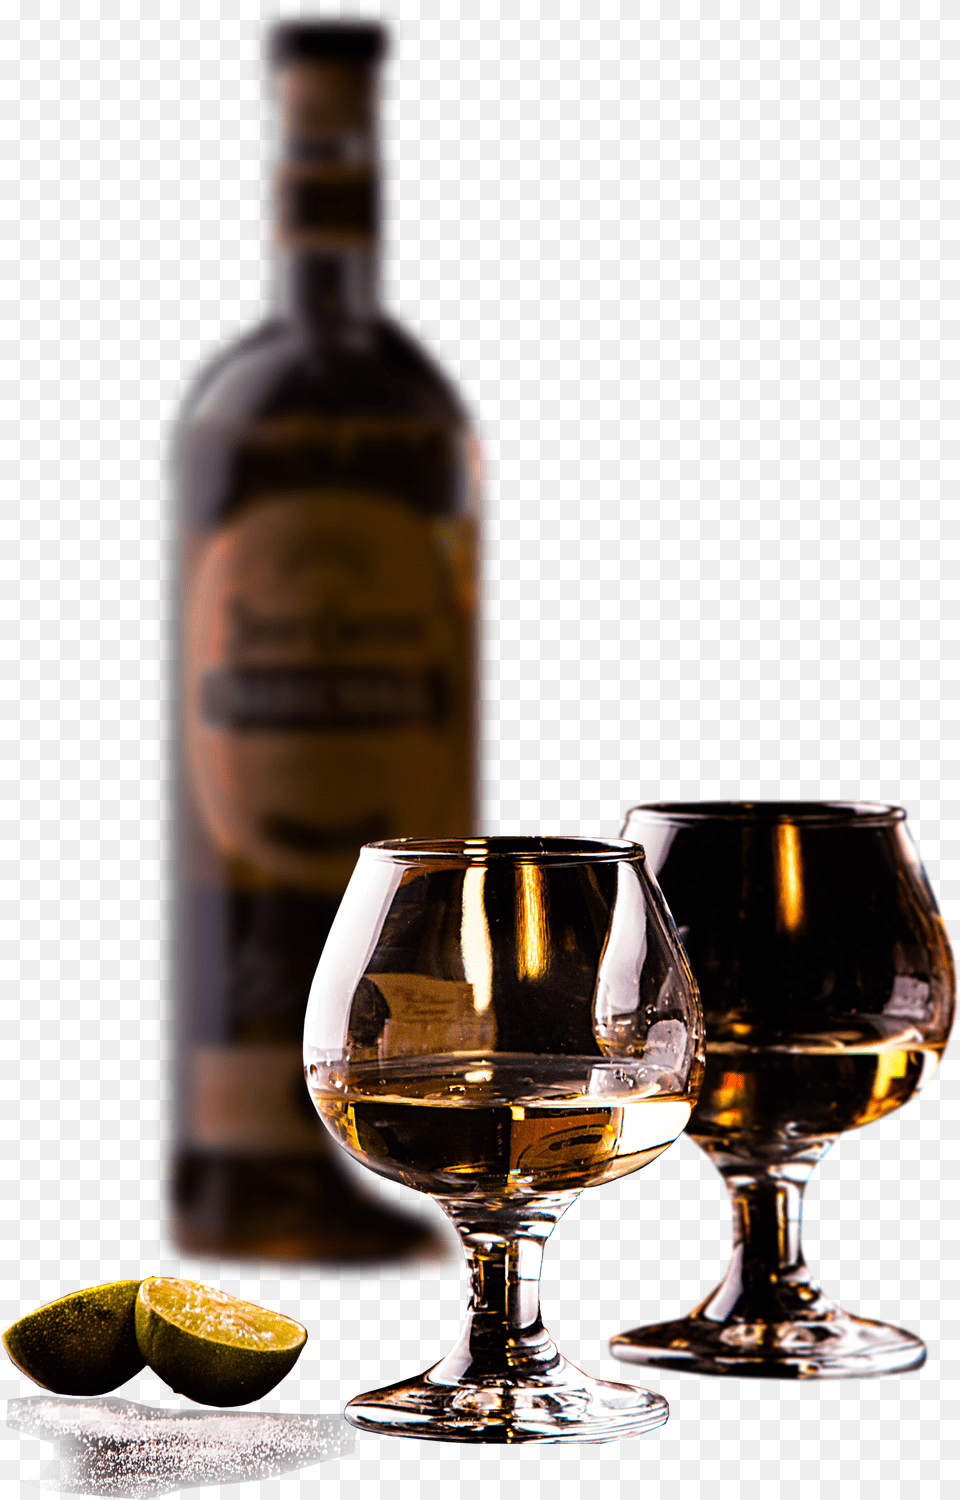 Tek Wine Glass, Alcohol, Beverage, Liquor, Bottle Png Image